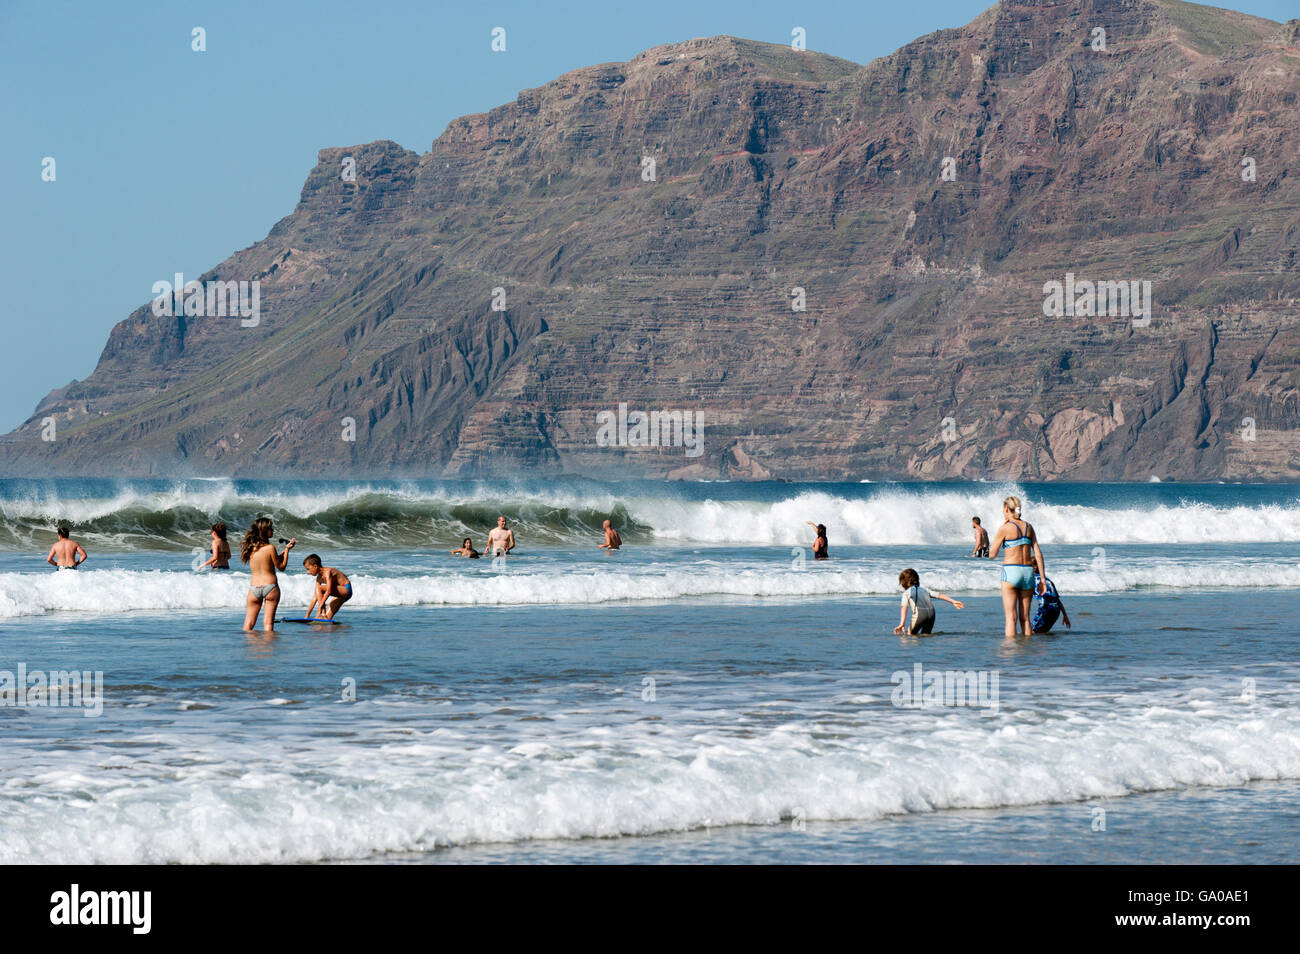 Les touristes à l'eau, la plage Playa de Famara, La Caleta de Famara, côte ouest de Lanzarote, Canary Islands, Spain, Europe Banque D'Images